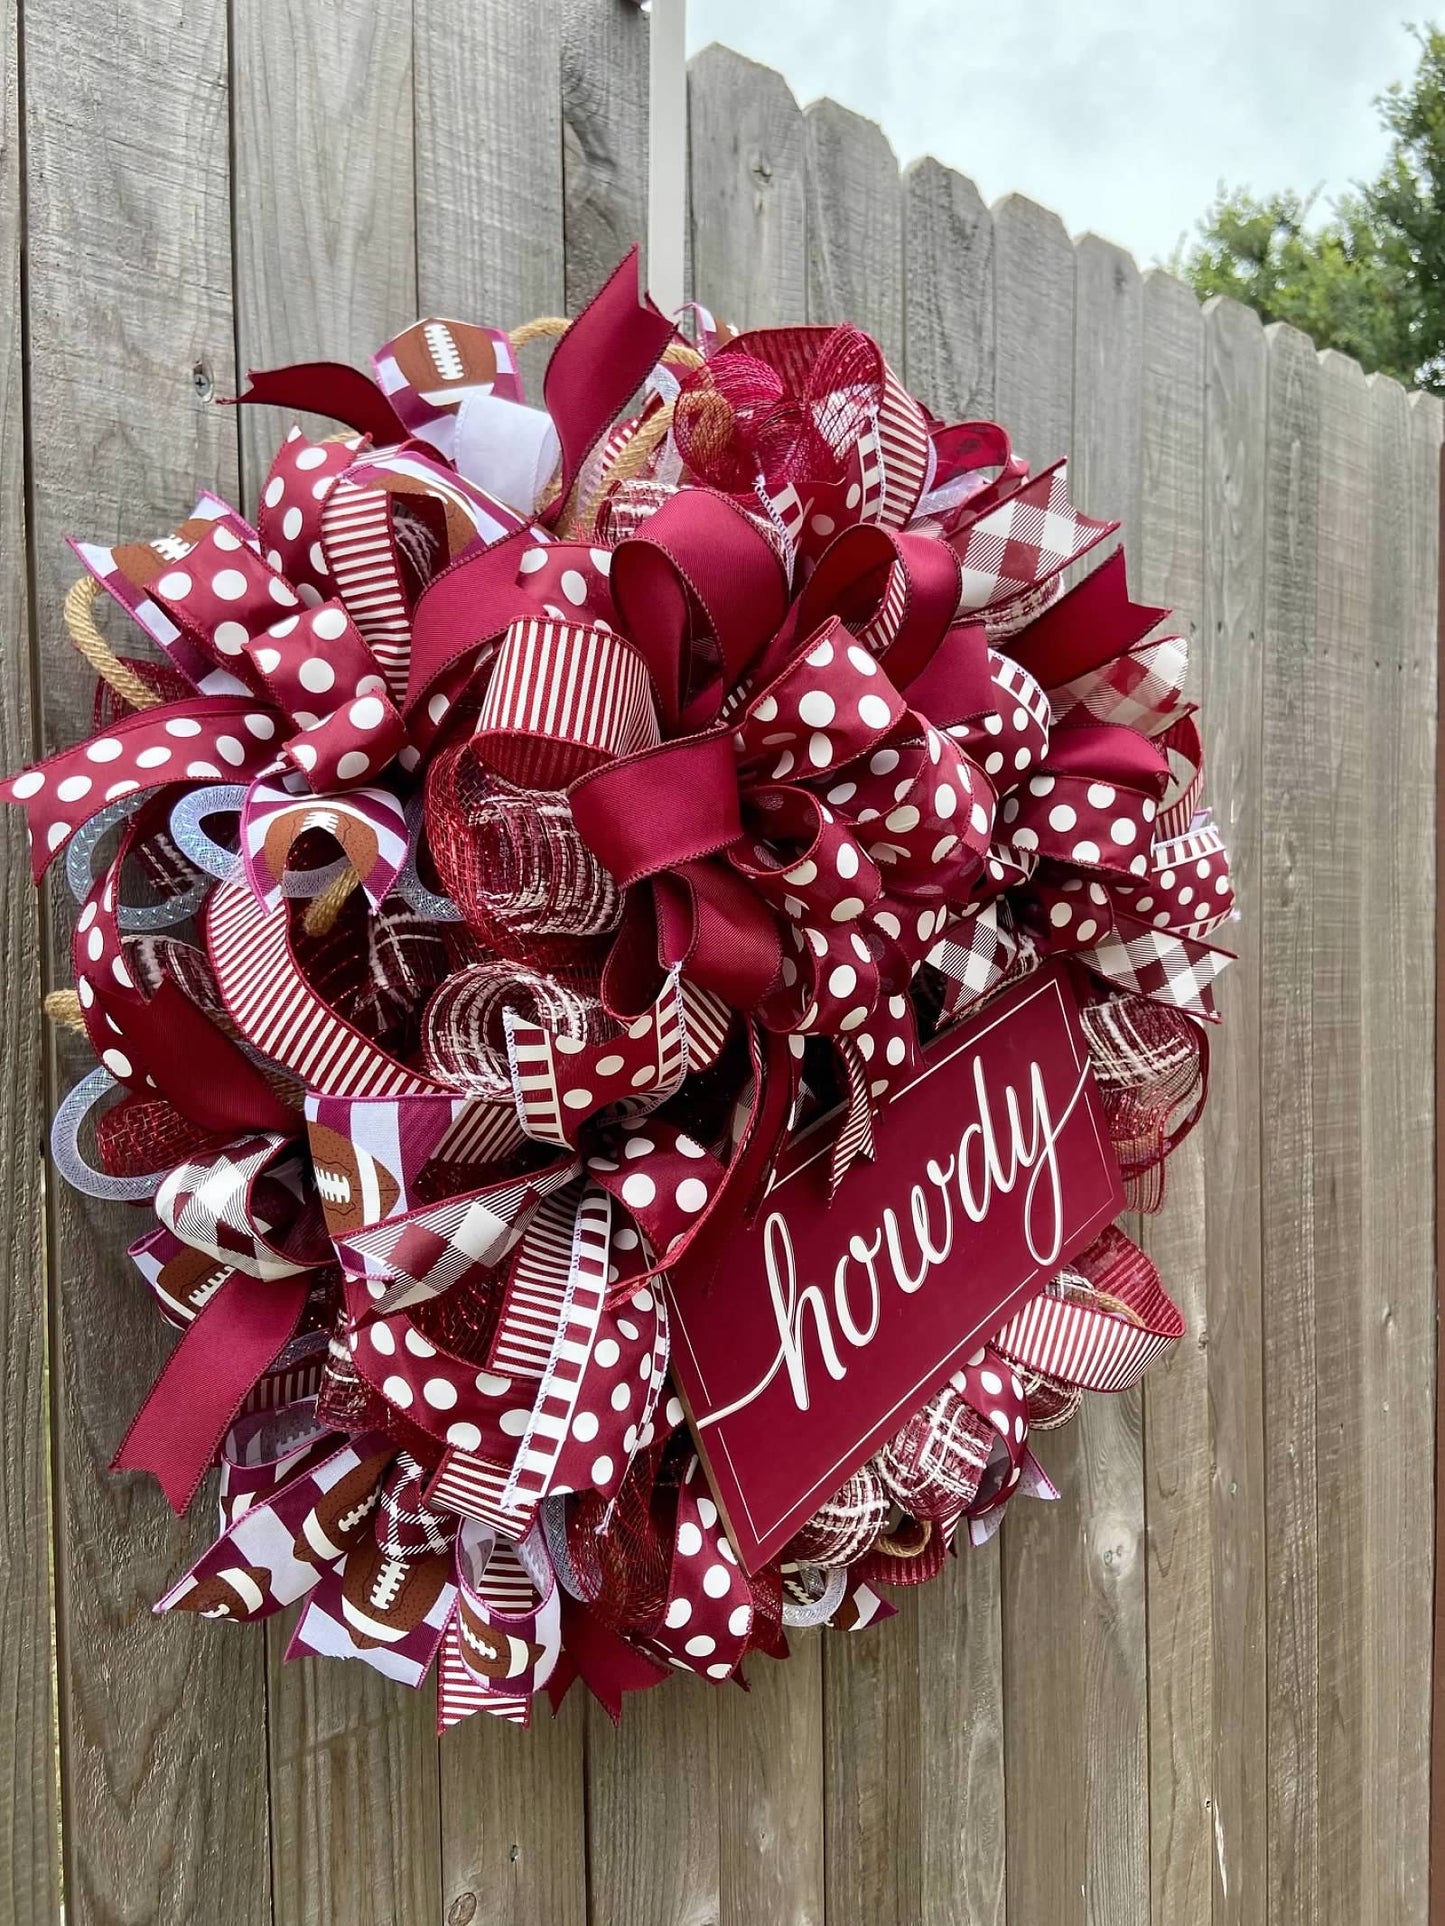 TAMU Full Ribbon Wreath